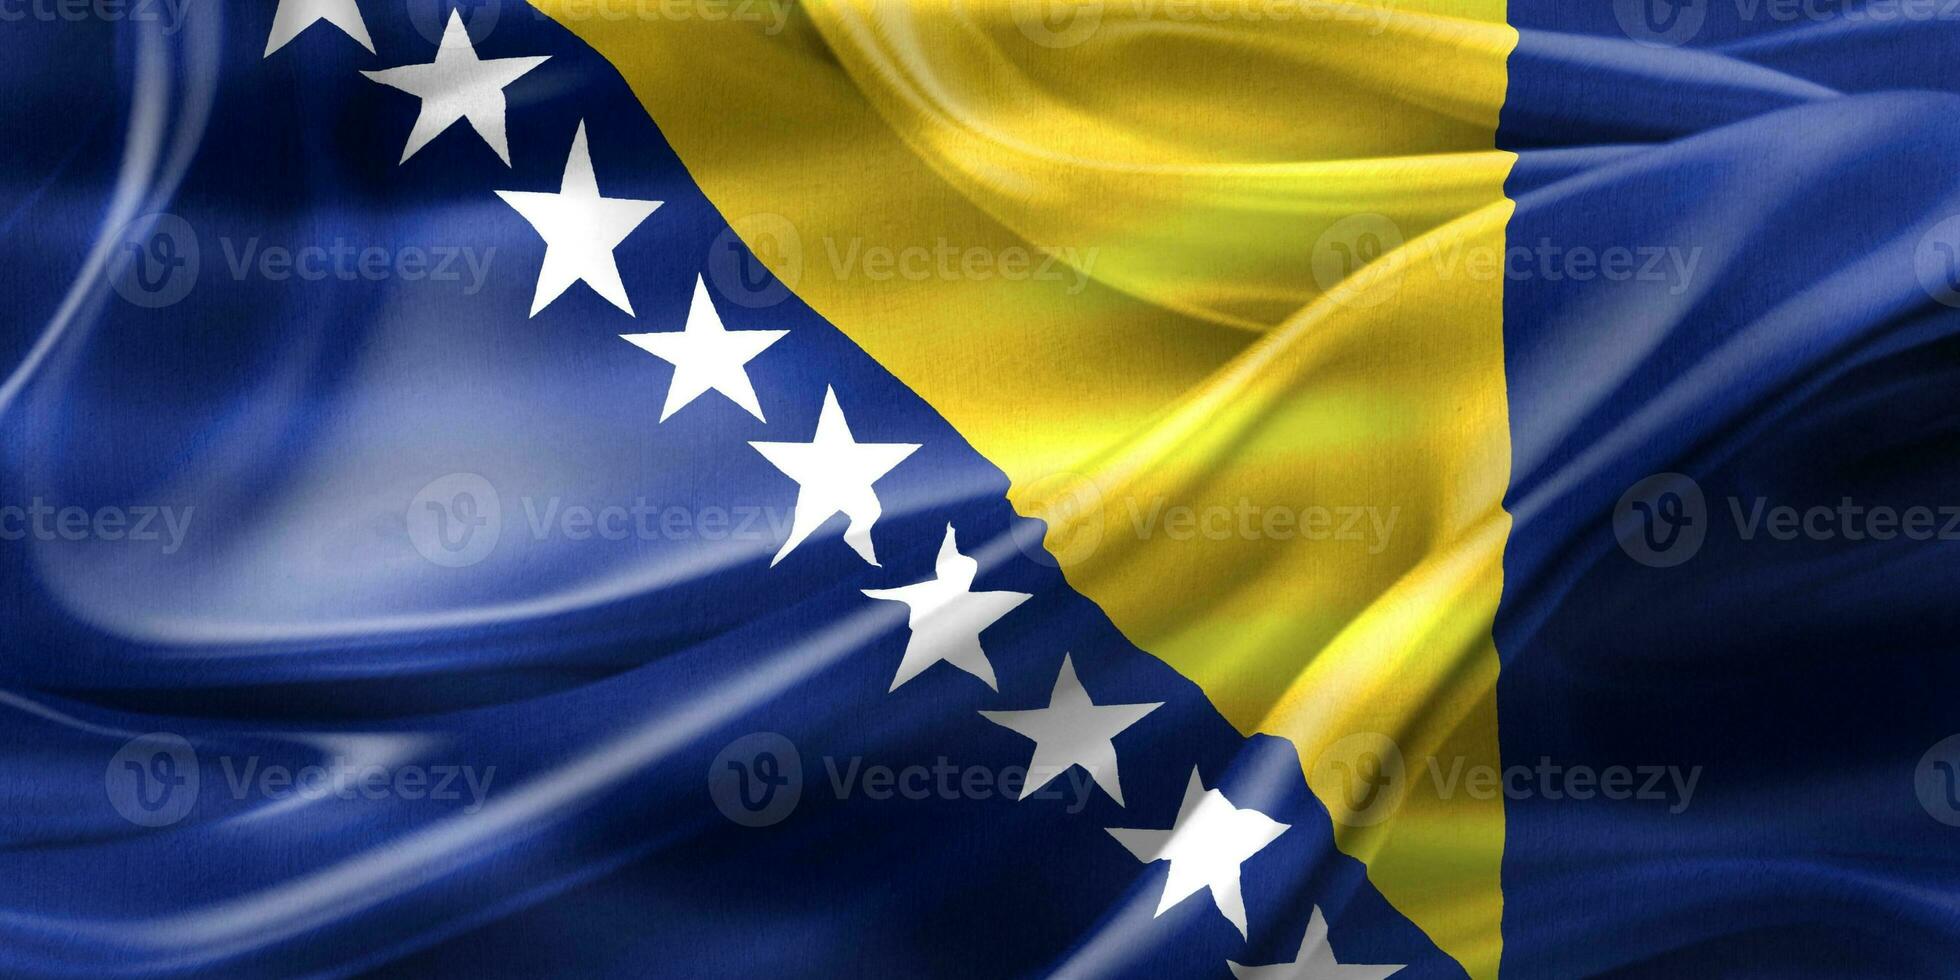 flagge von bosnien und herzegowina - realistische wehende stoffflagge foto